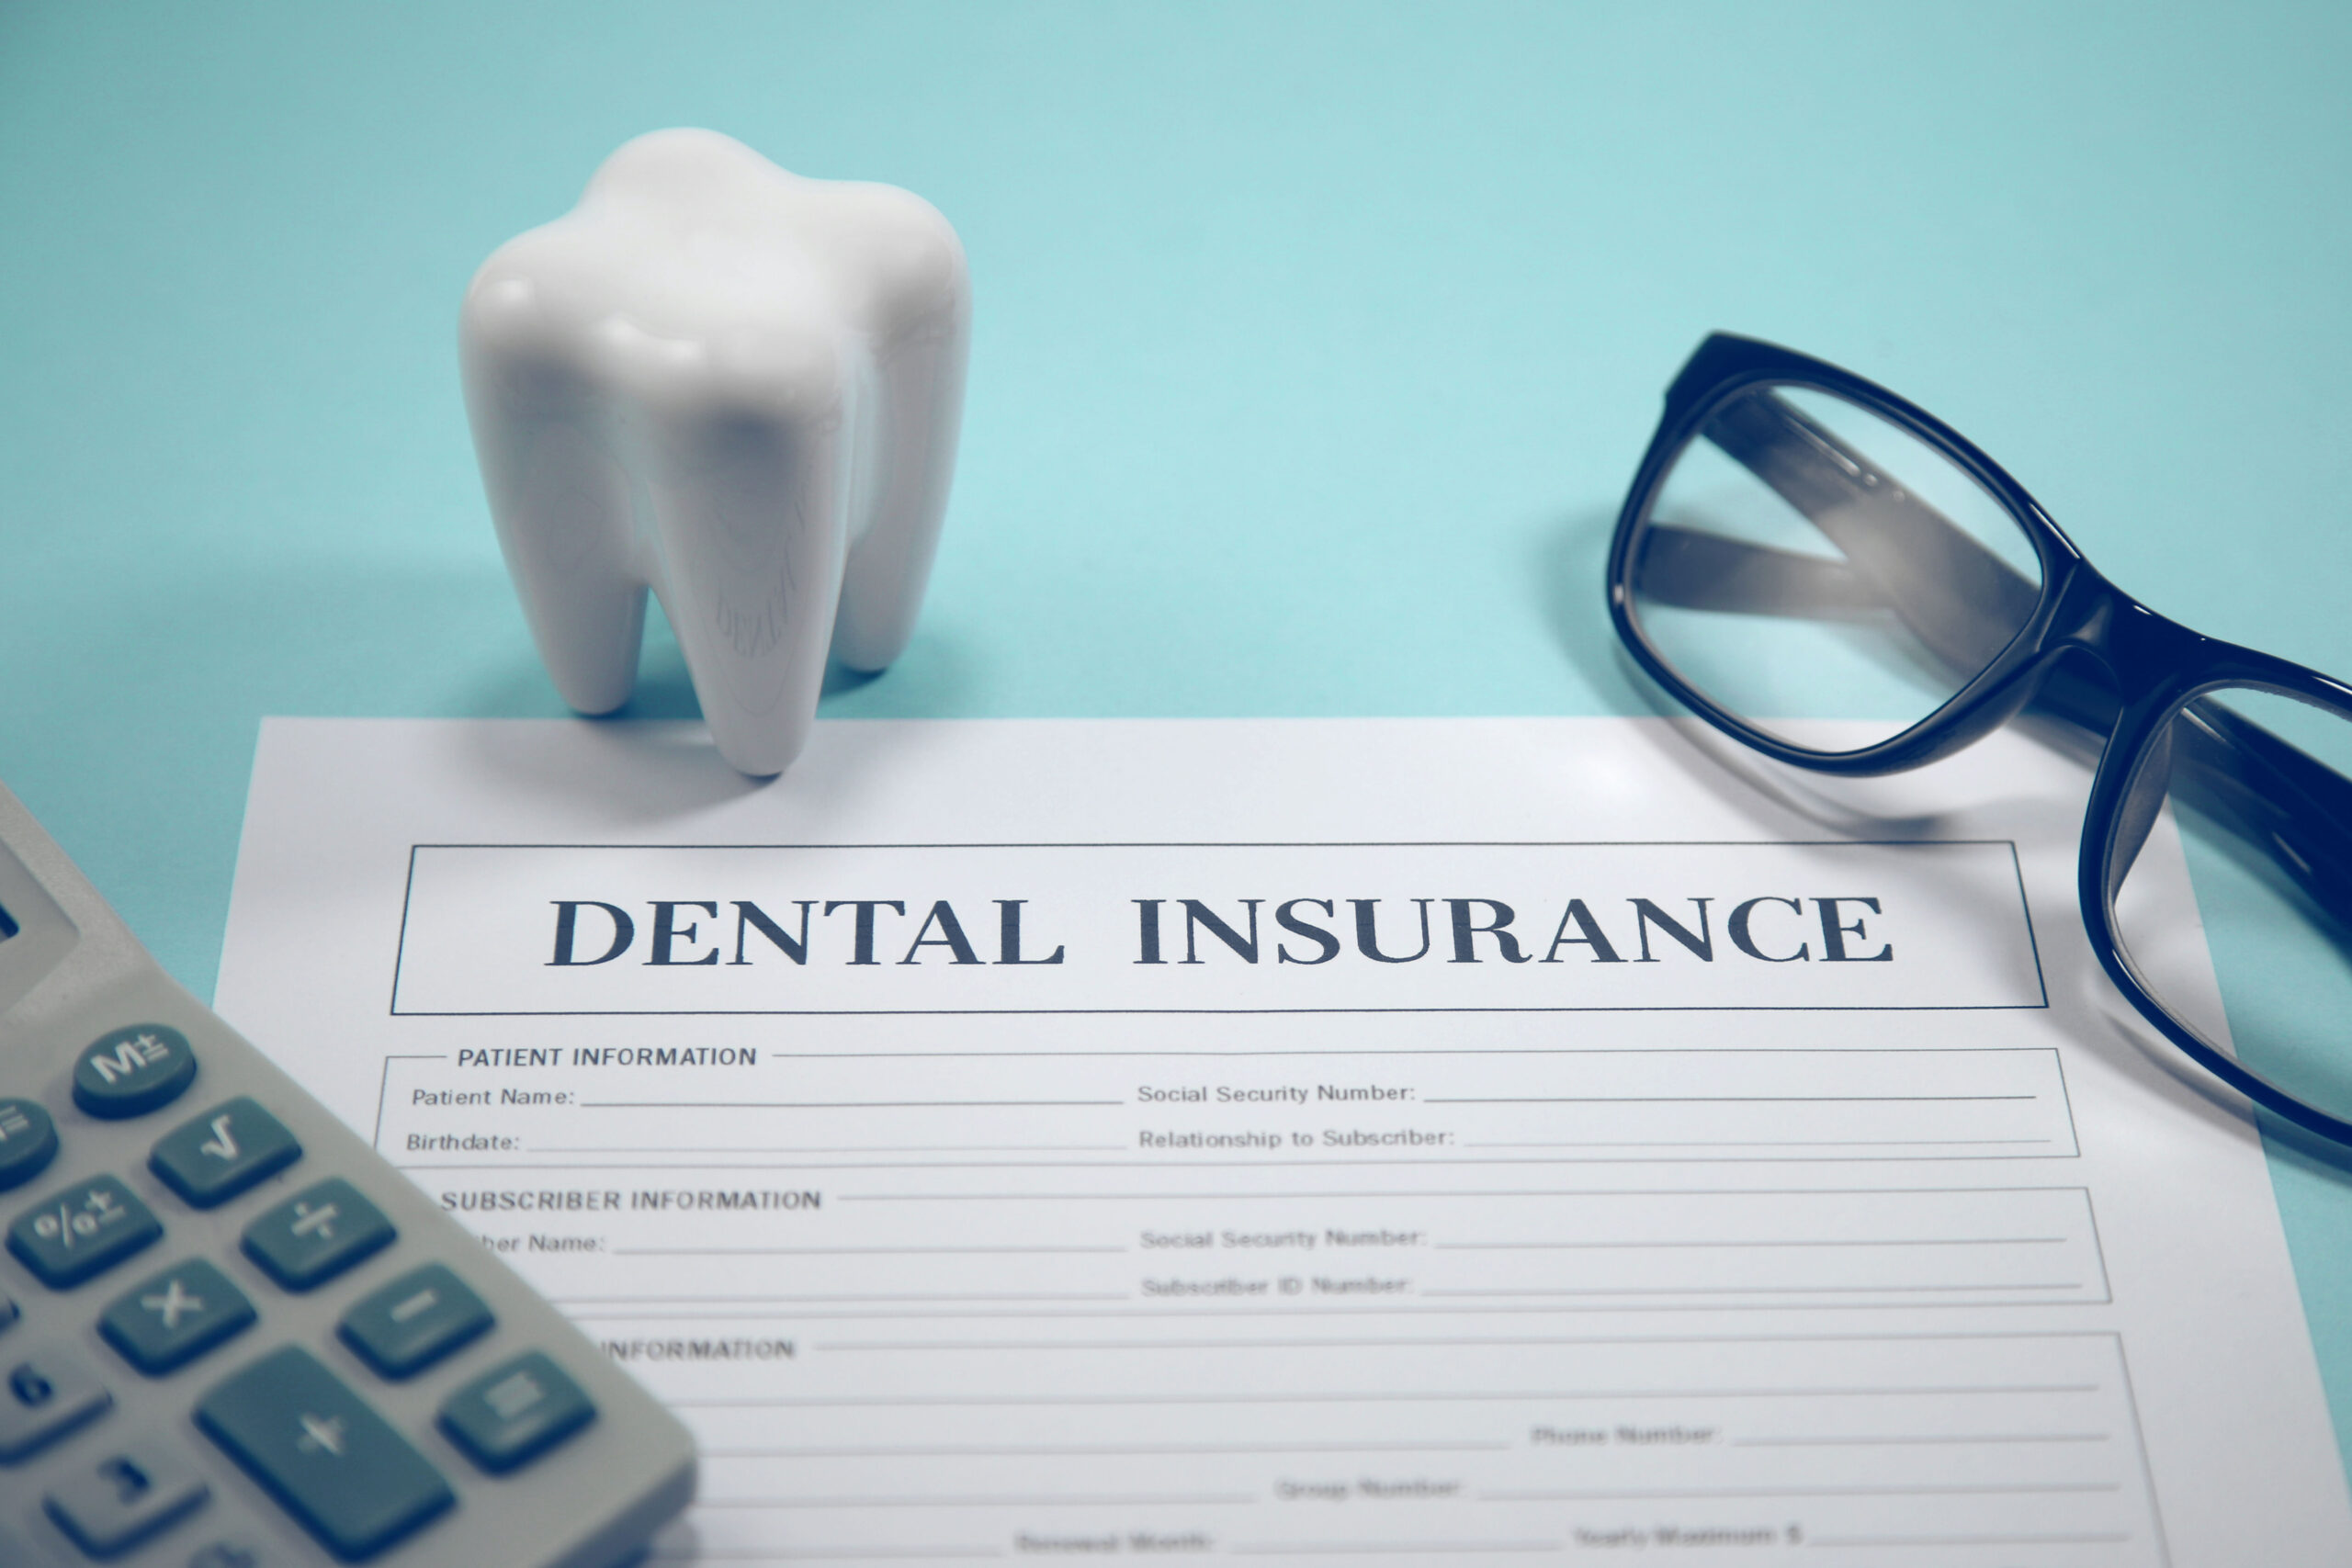 歯列矯正は絶対保険適用外とは限らない！保険適用となる場合とその条件とは？